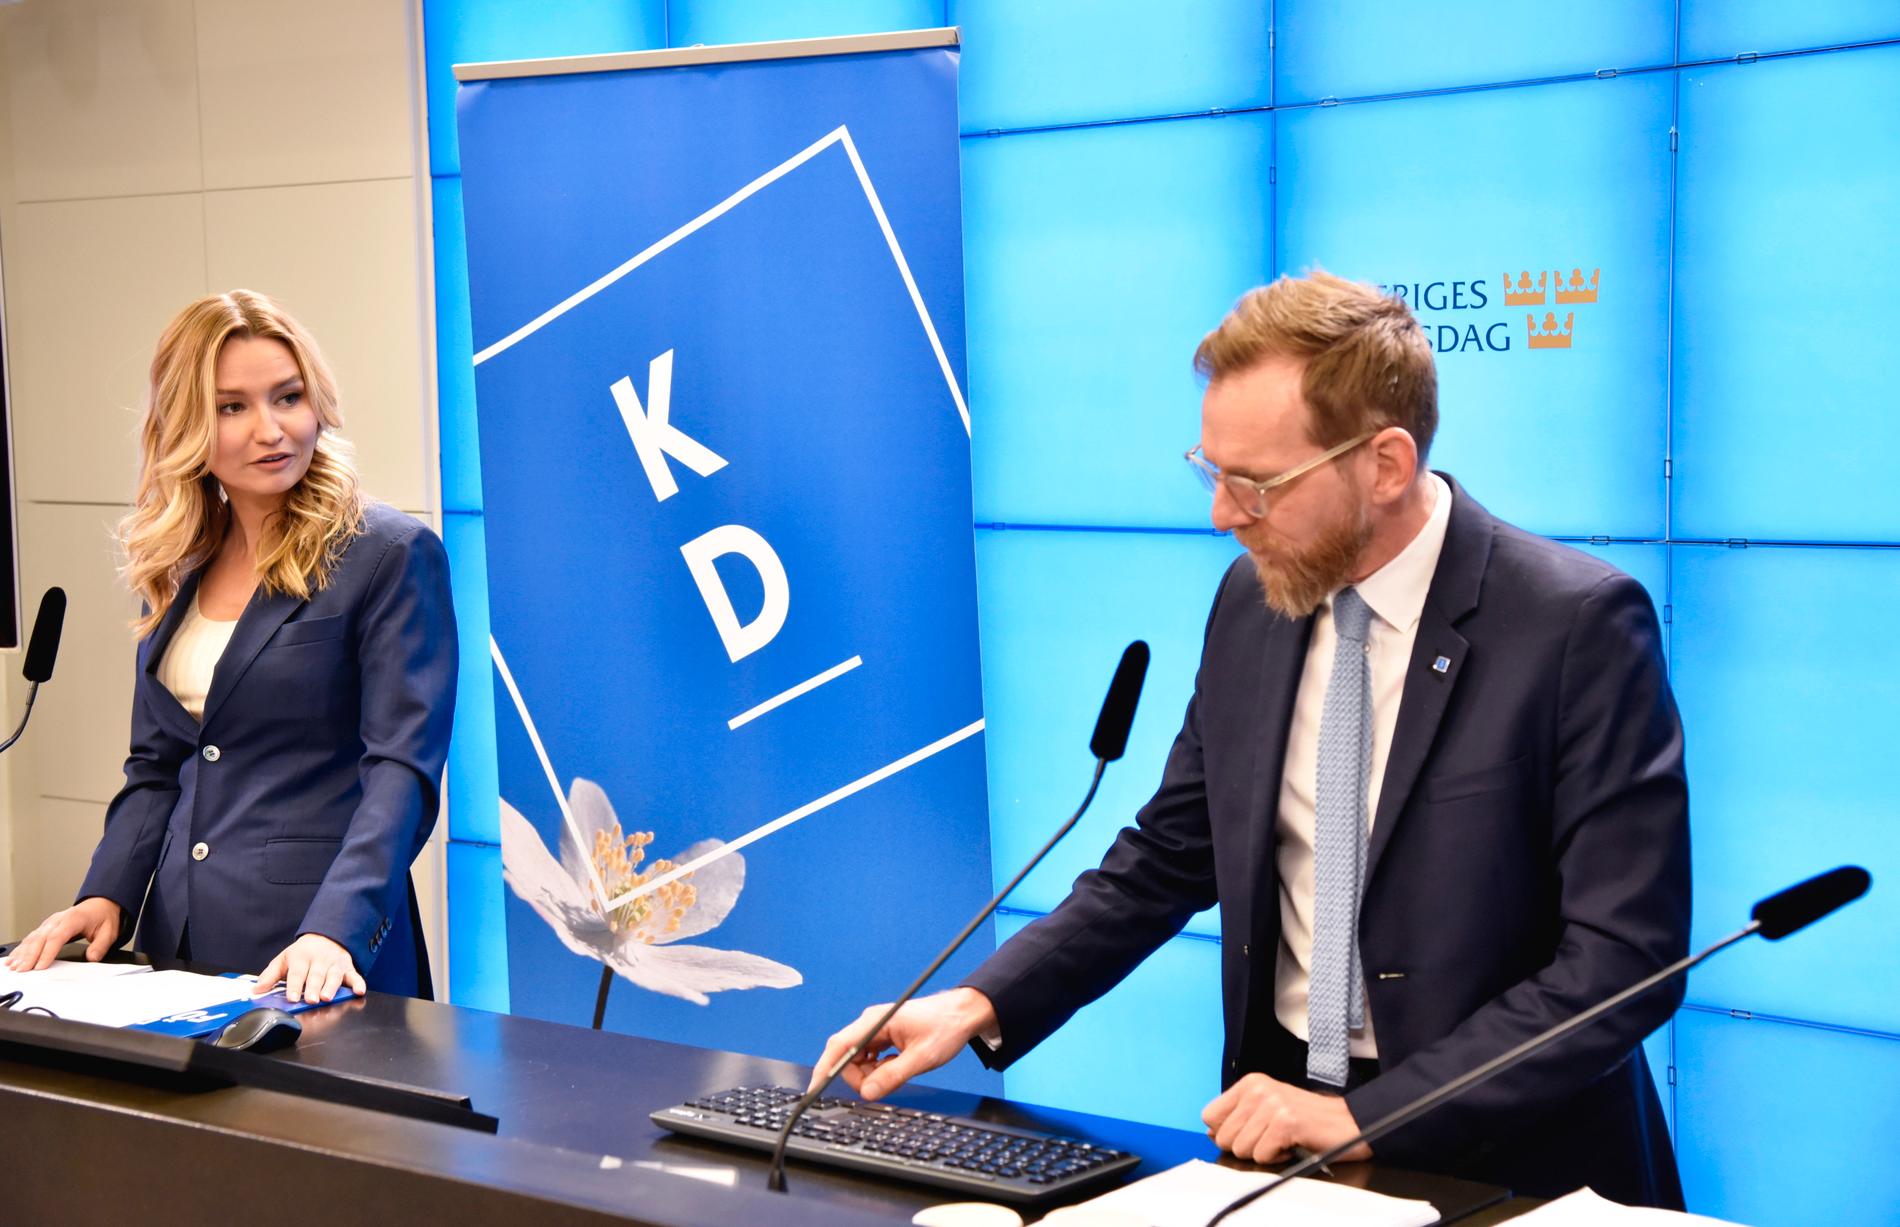 Kristdemokraternas partiledare Ebba Busch (KD) och ekonomisk-politiska talesperson Jakob Forssmed presenterar partiets skuggbudget under en pressträff i riksdagens presscenter.